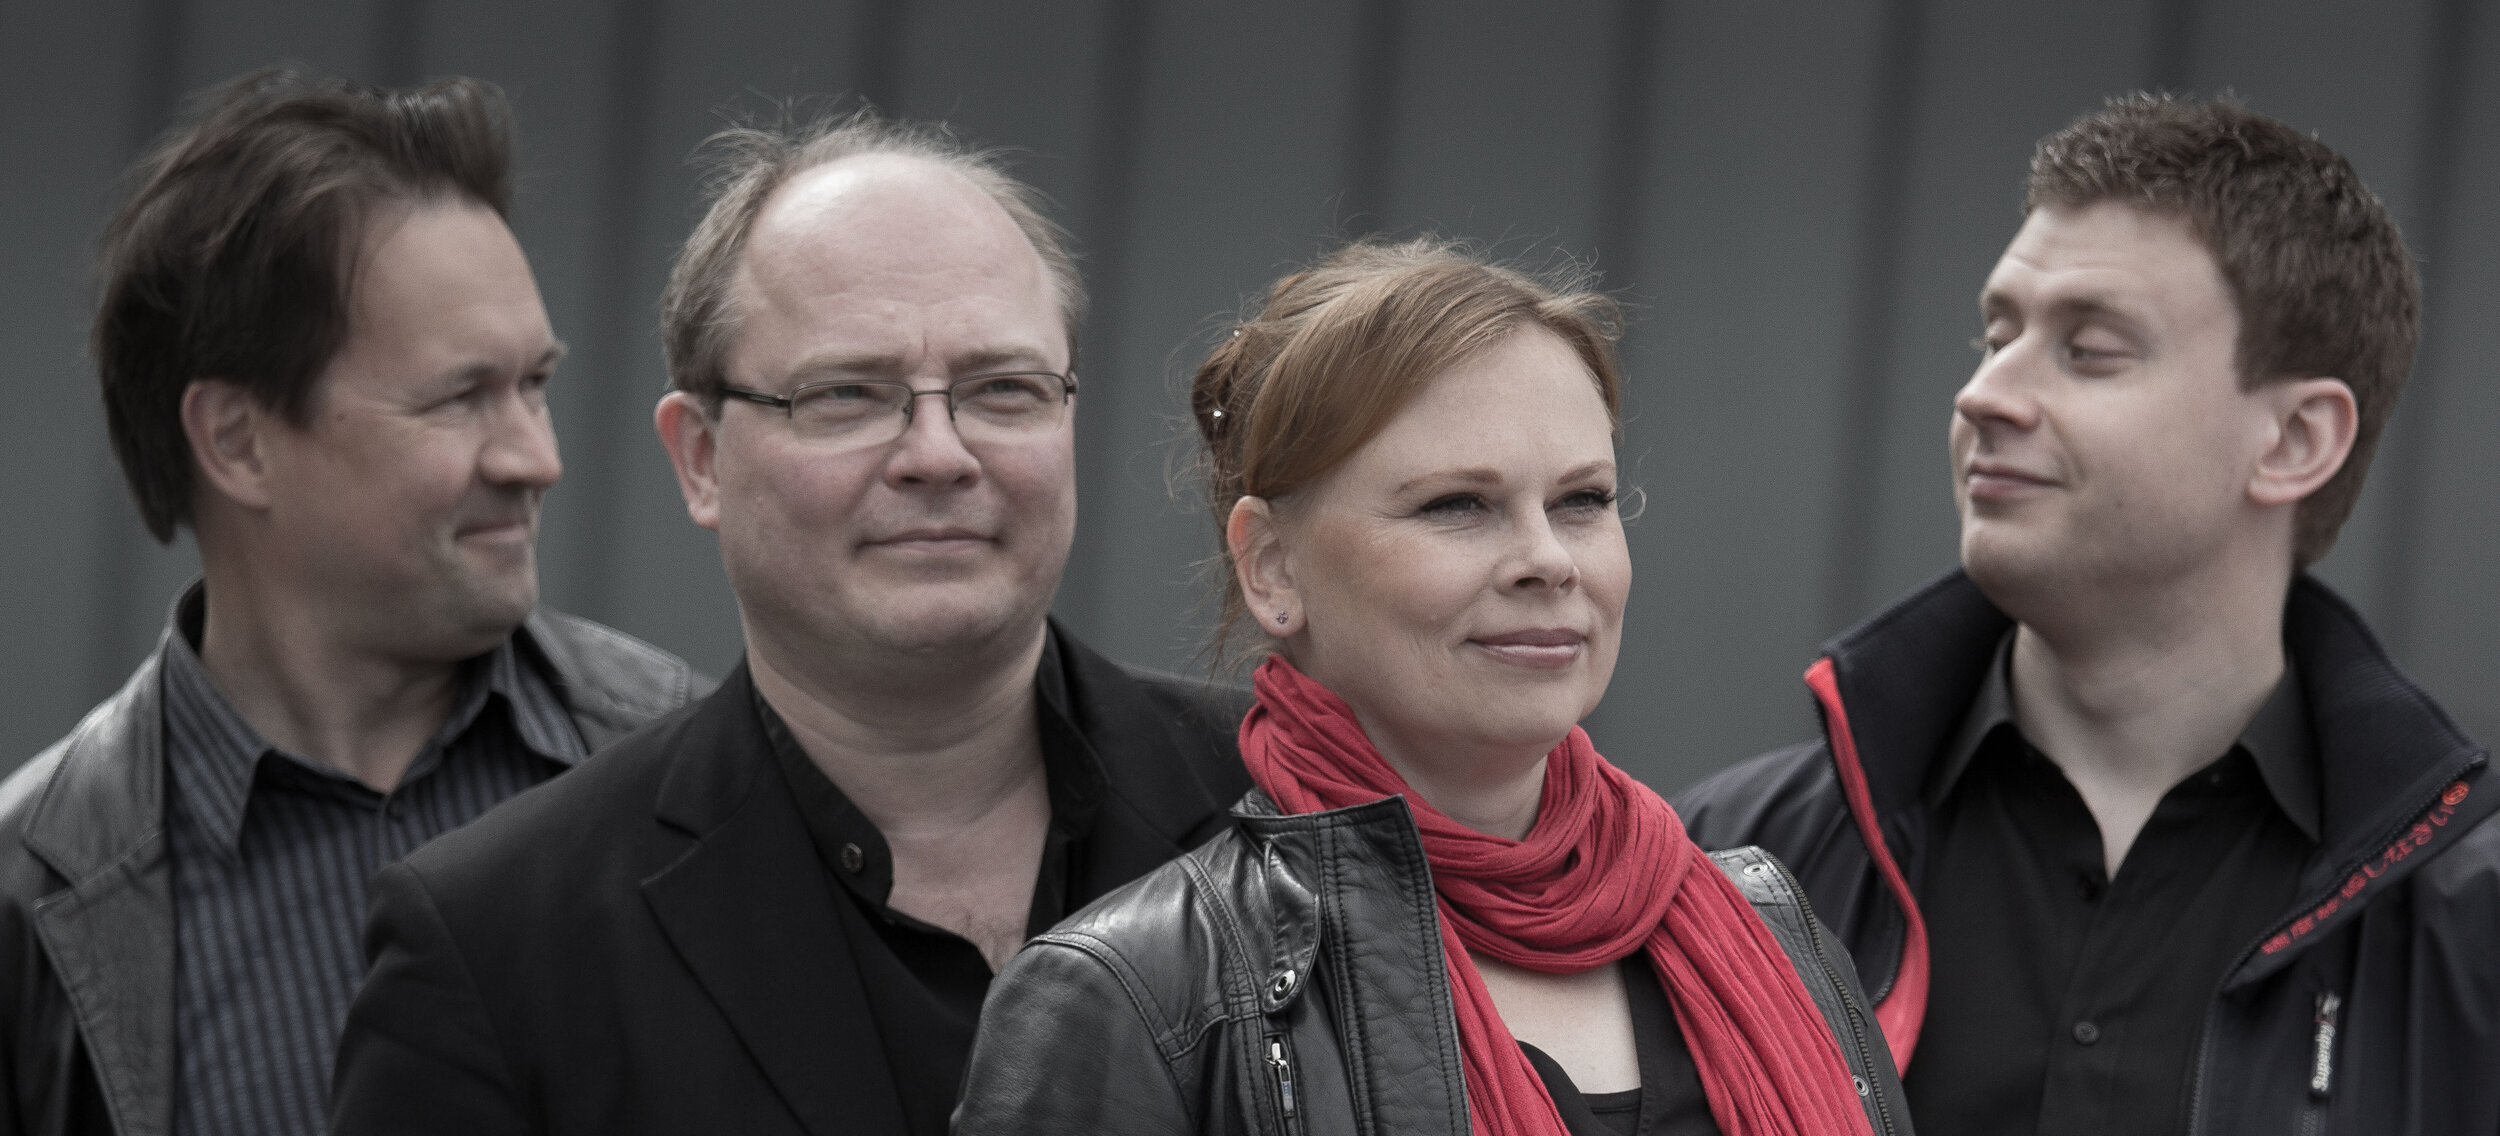 Uusi Helsinki -kvartetti. Neljä henkilöä puolikuvassa, reunimmaiset katsovat toisiinsa, harmaa tausta.